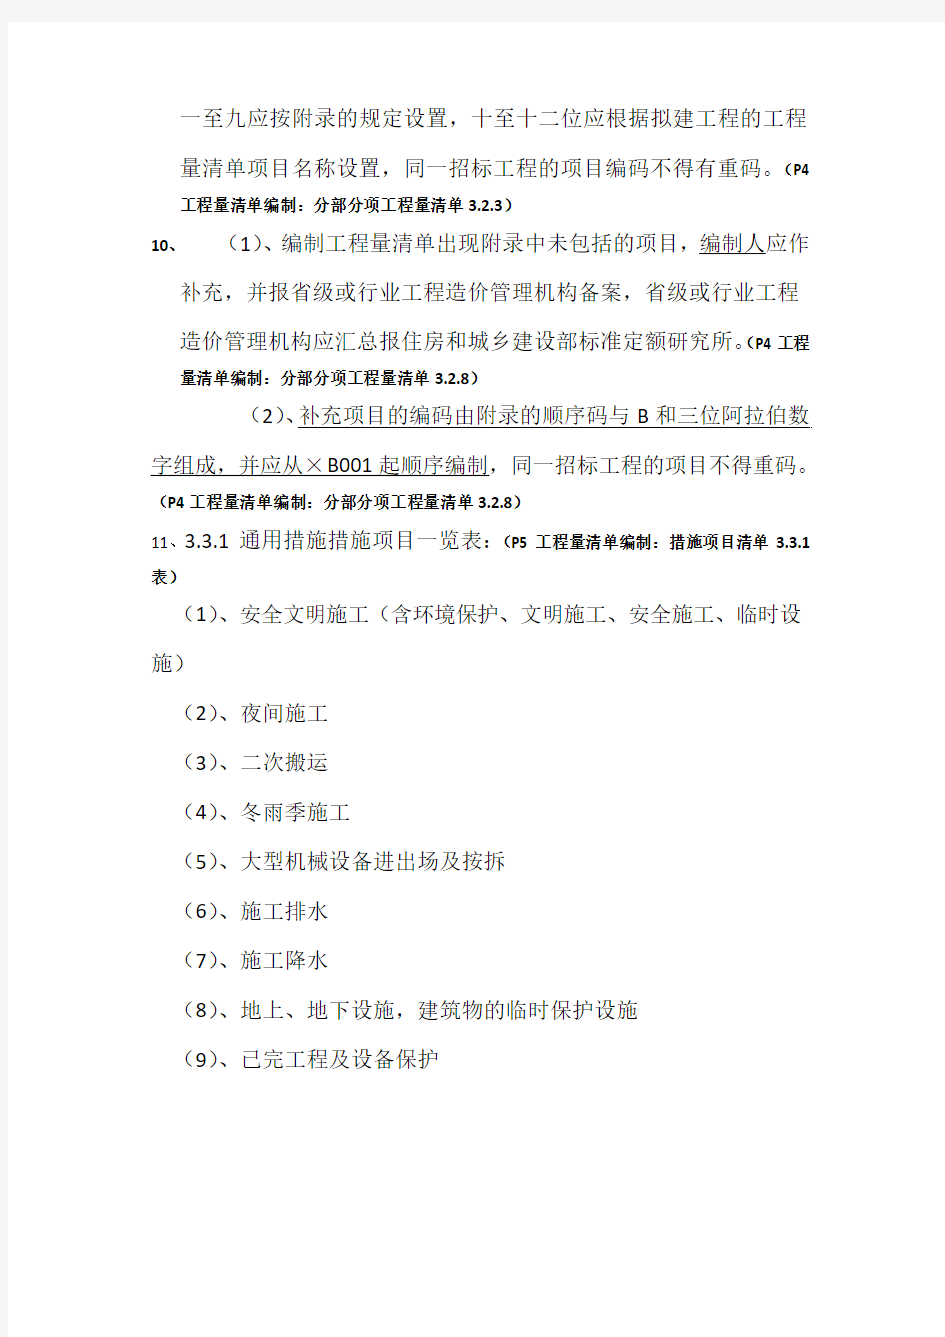 上海2008清单(土建总则)1